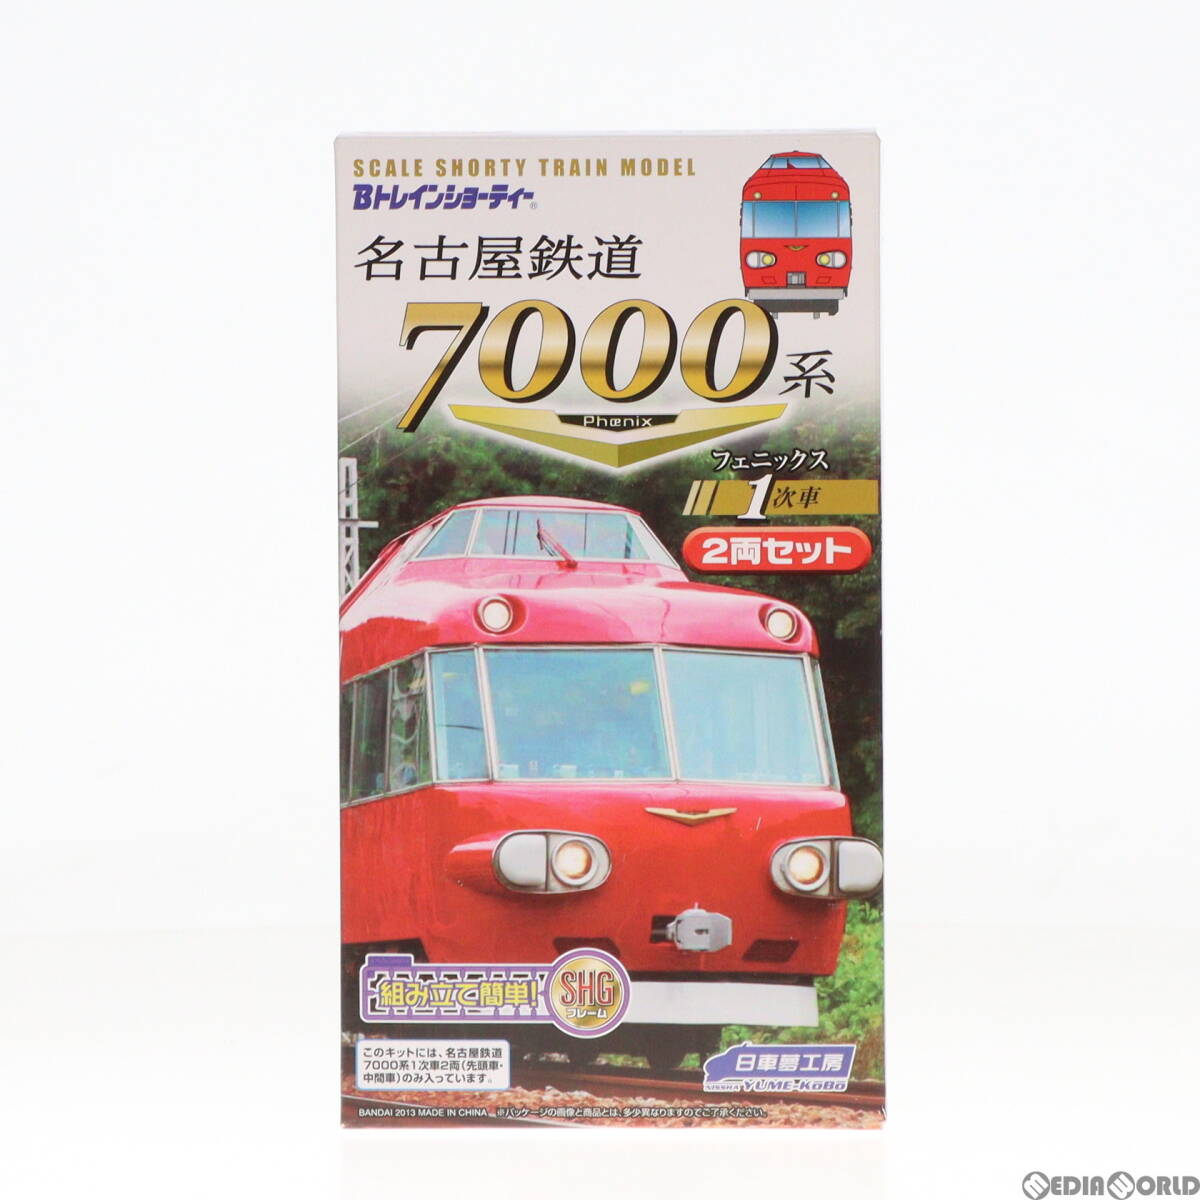 【中古】[RWM]2194281 Bトレインショーティー 名古屋鉄道7000系 フェニックス 1次車 2両セット 組み立てキット Nゲージ 鉄道模型(62004951)_画像1